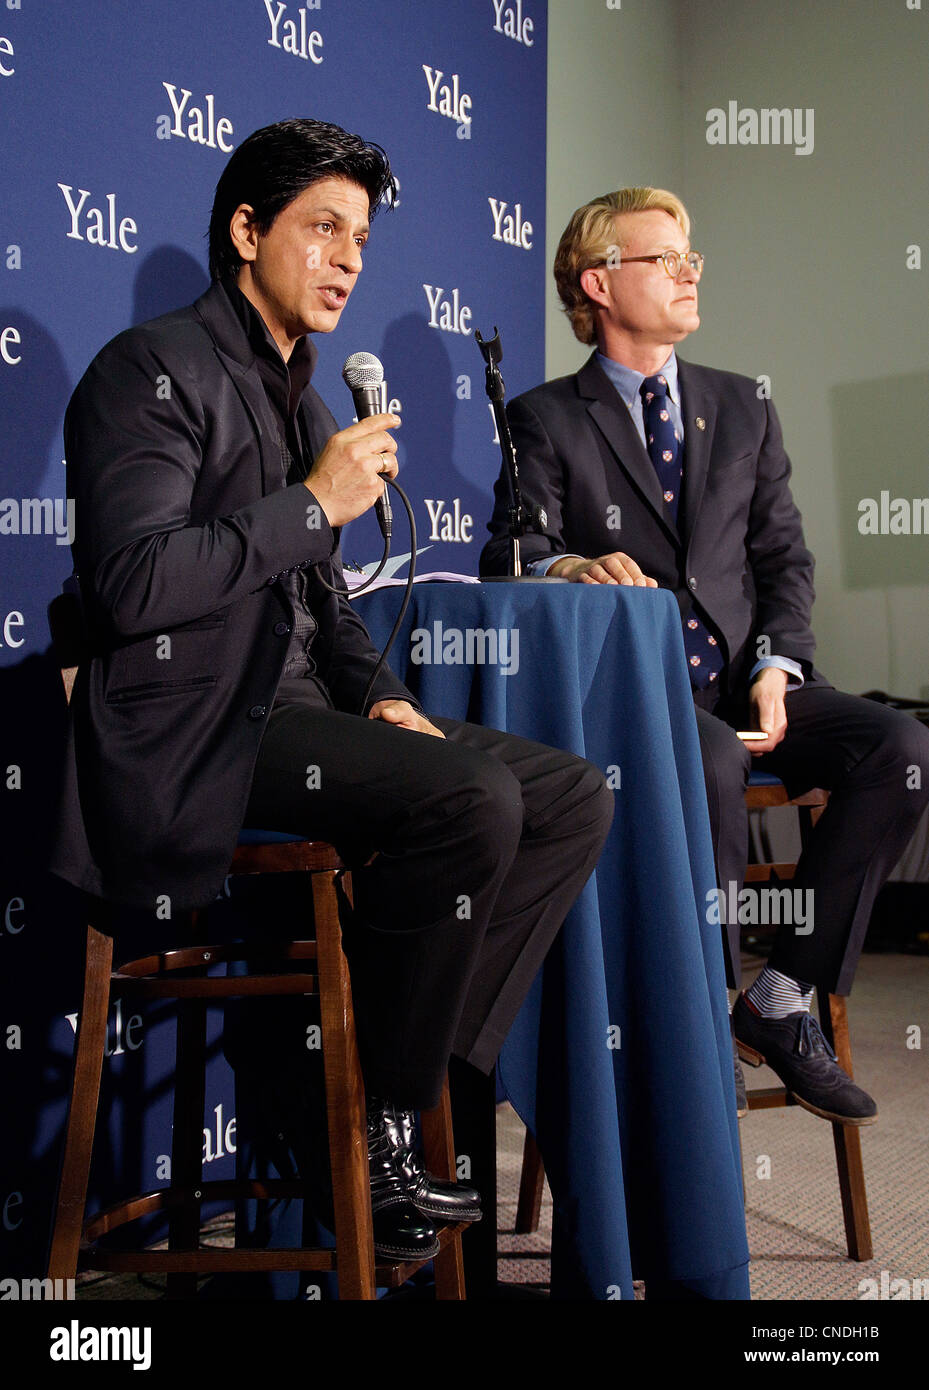 New Haven, CT USA - beantwortet Bollywood Film Superstar Shah Rukh Khan, links, zusammen mit Michael Morand von Yale, Fragen aus den Medien während einer Pressekonferenz, als er sich zu ein vollen Haus von Fans am Shubert Theater in New Haven begrüßen. Shah Rukh Khan empfing die Chubb-Stipendium an der Yale University. Stockfoto